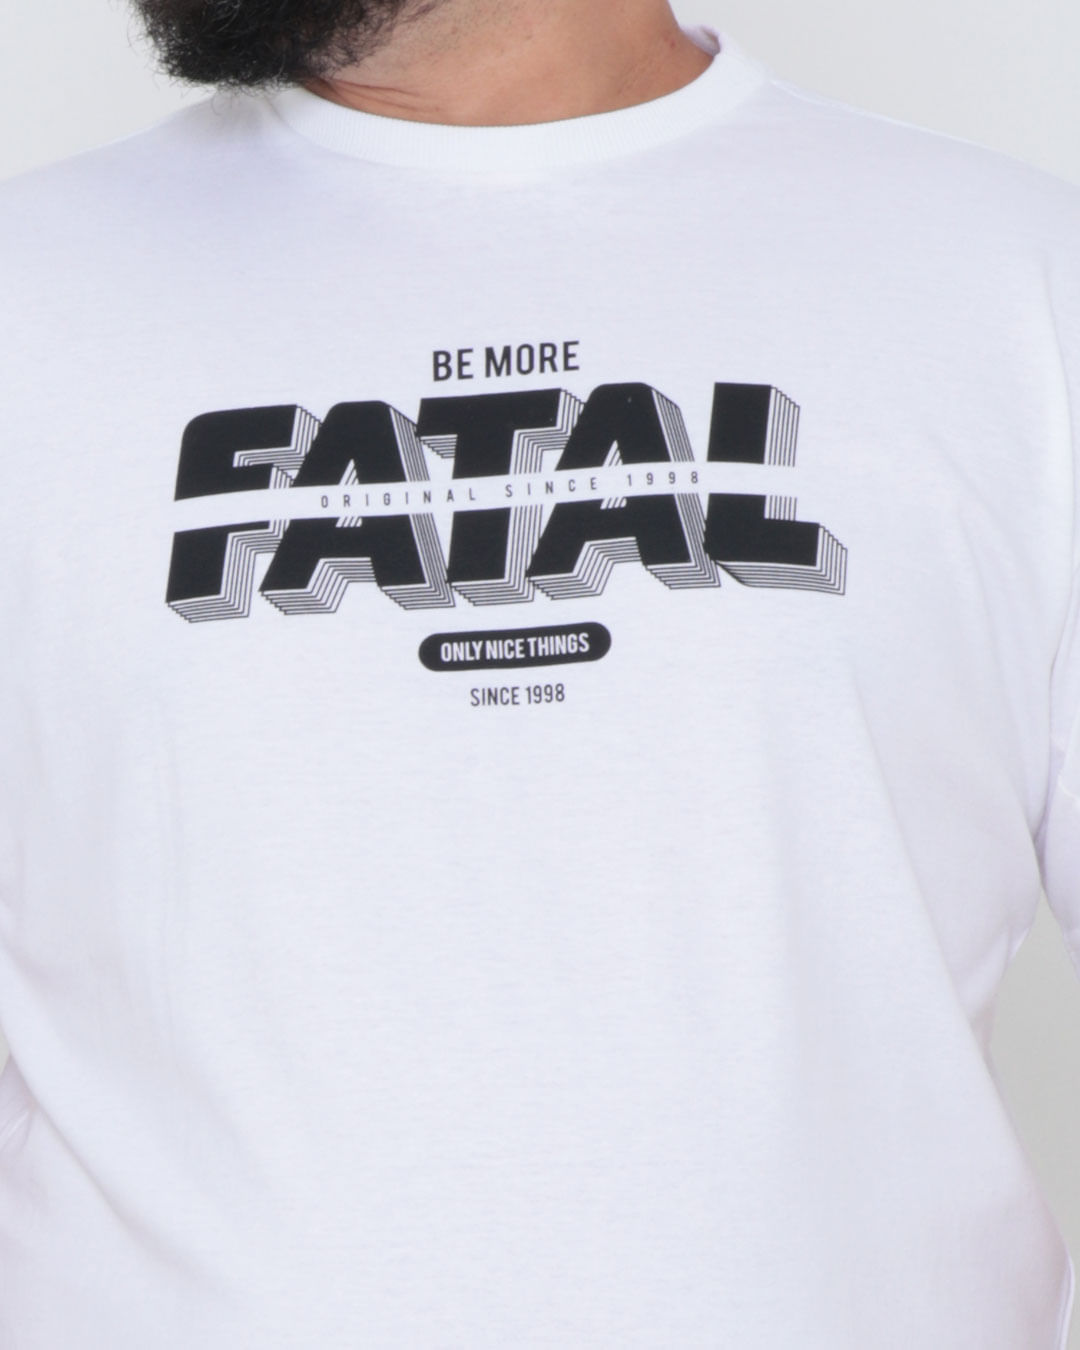 Camiseta-Plus-Size-Fatal-Estampada-Branca